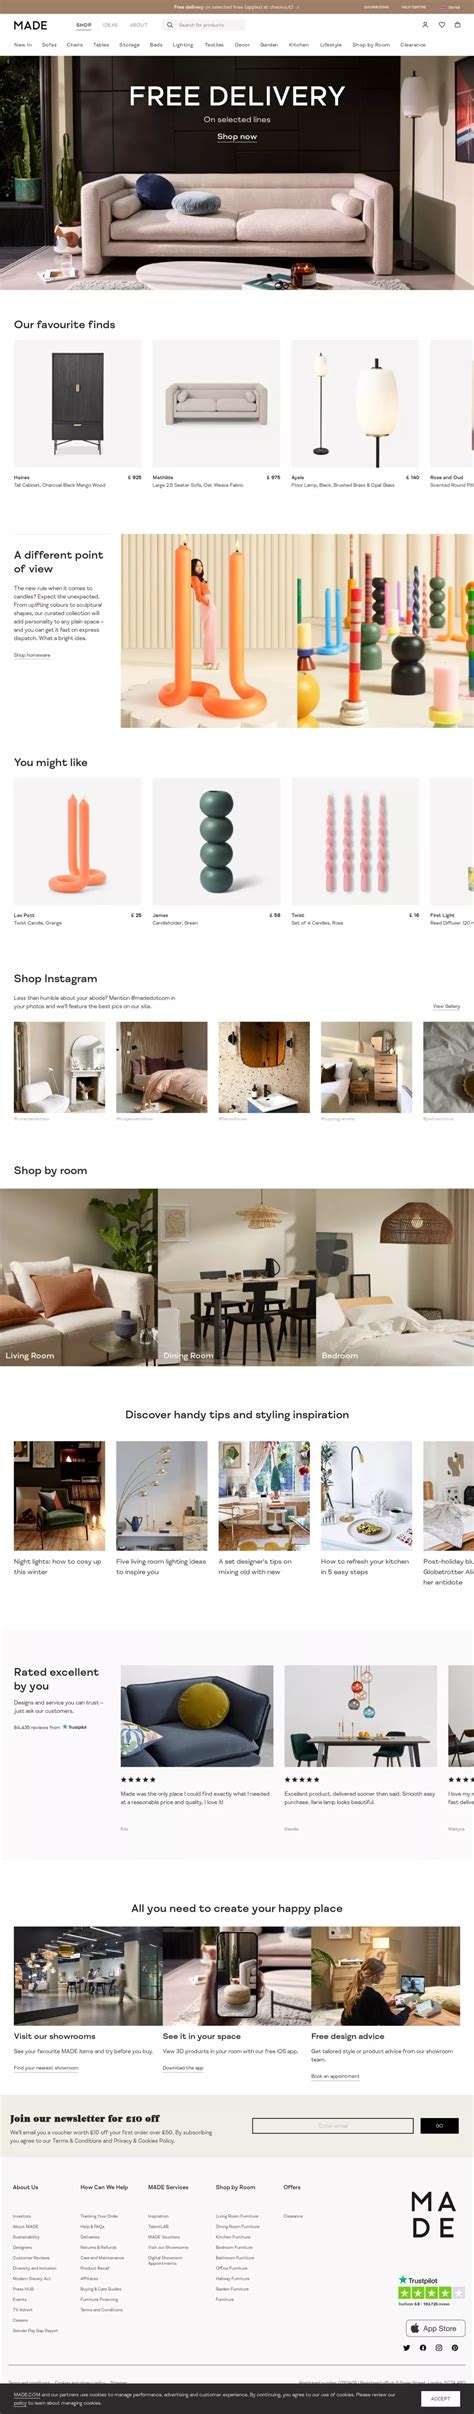 线上家具平台Made网站设计 - 设计之家